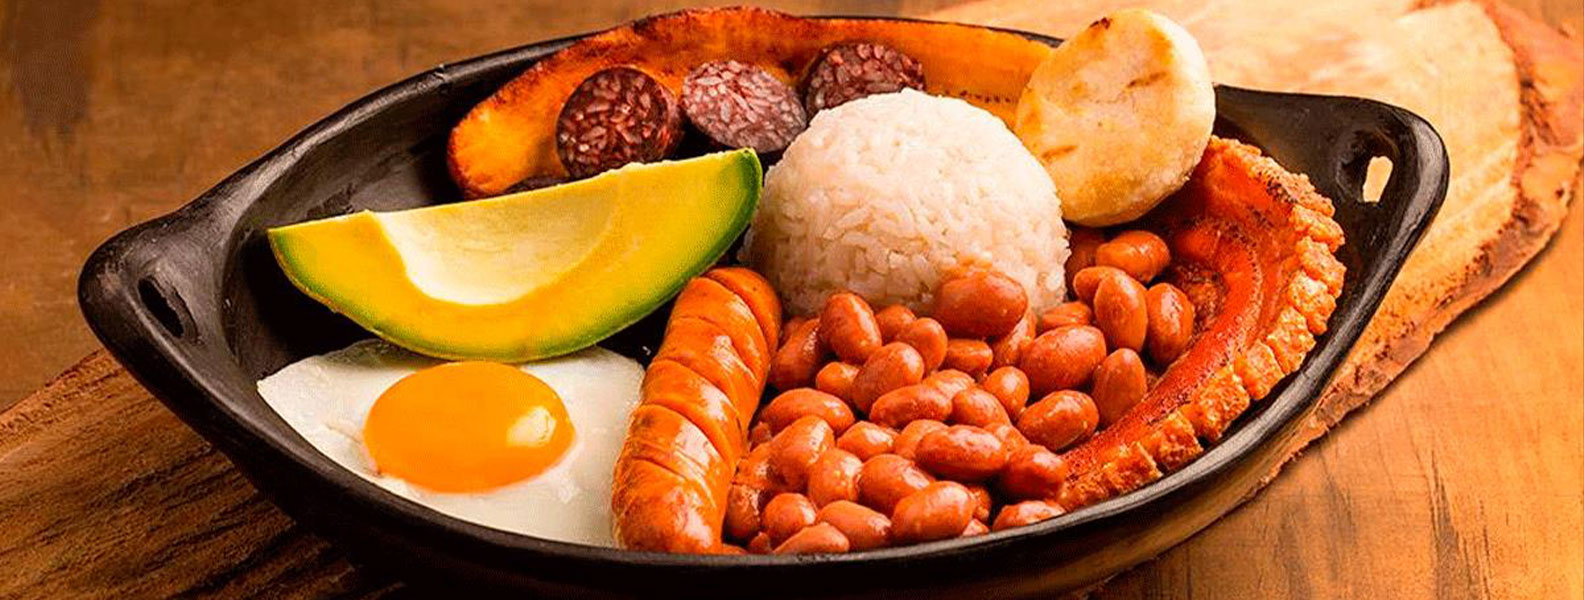 Plato de comida típico de la ciudad de Medellín